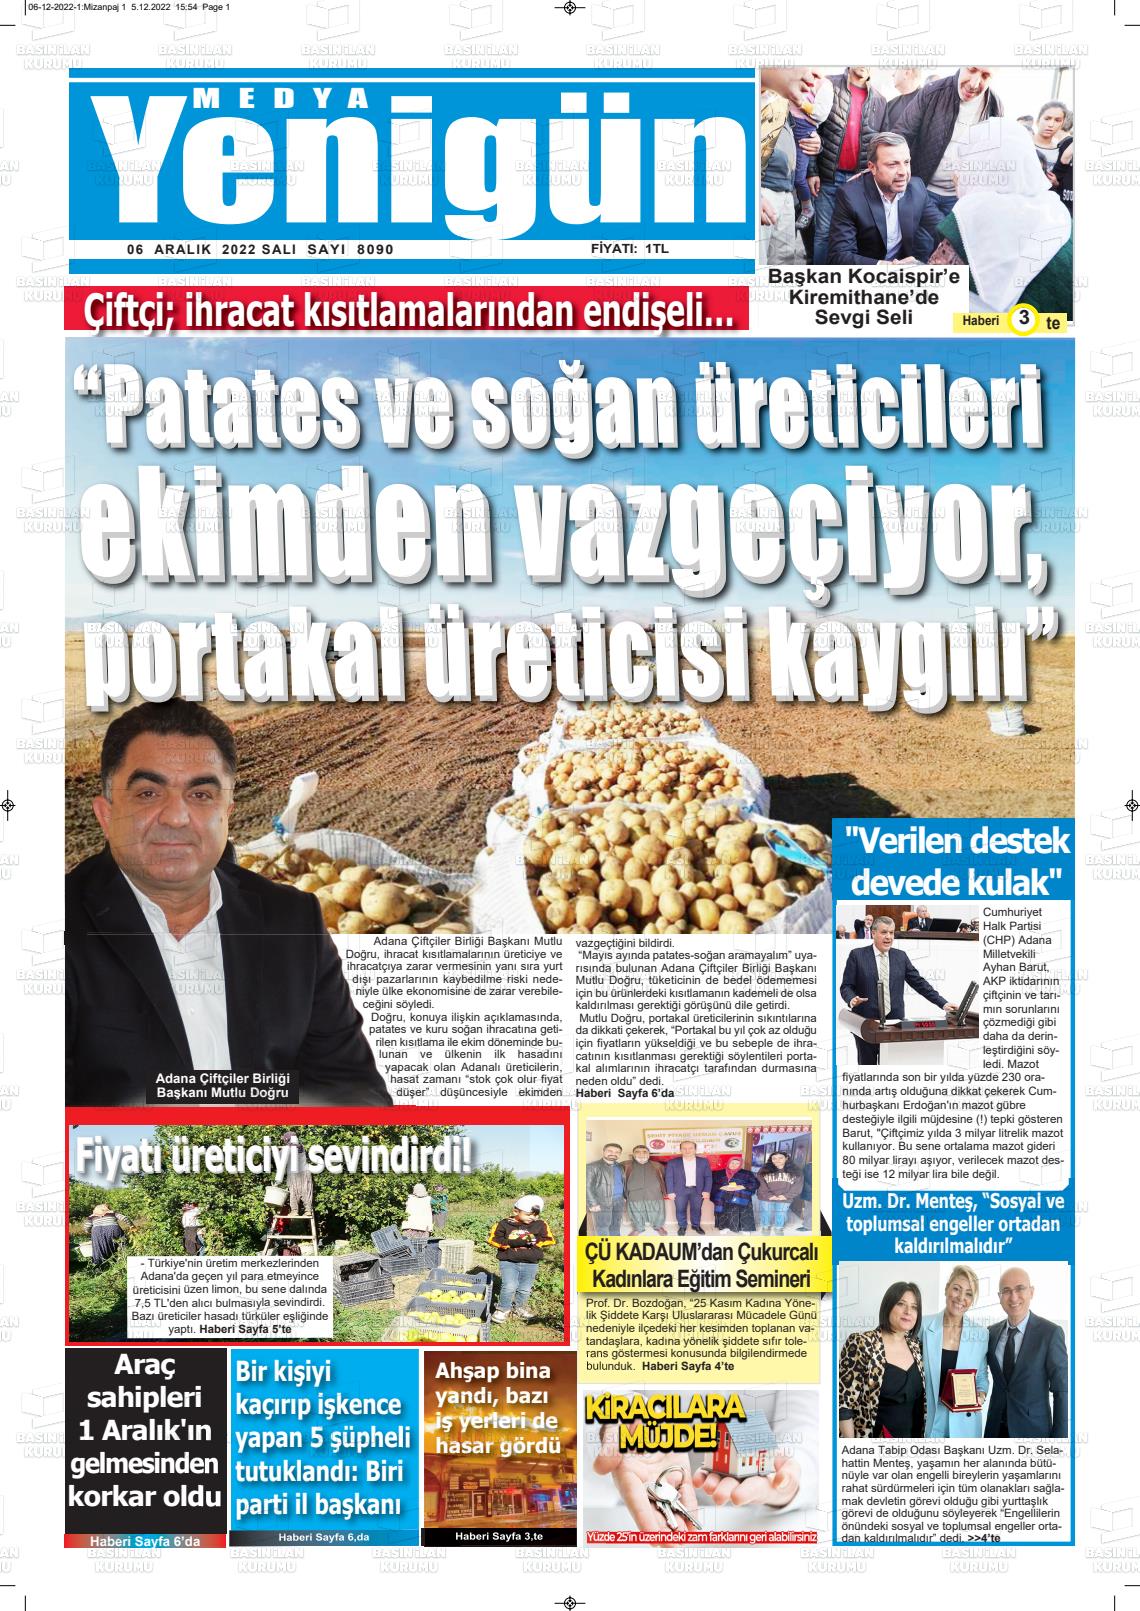 06 Aralık 2022 Medya Yenigün Gazete Manşeti